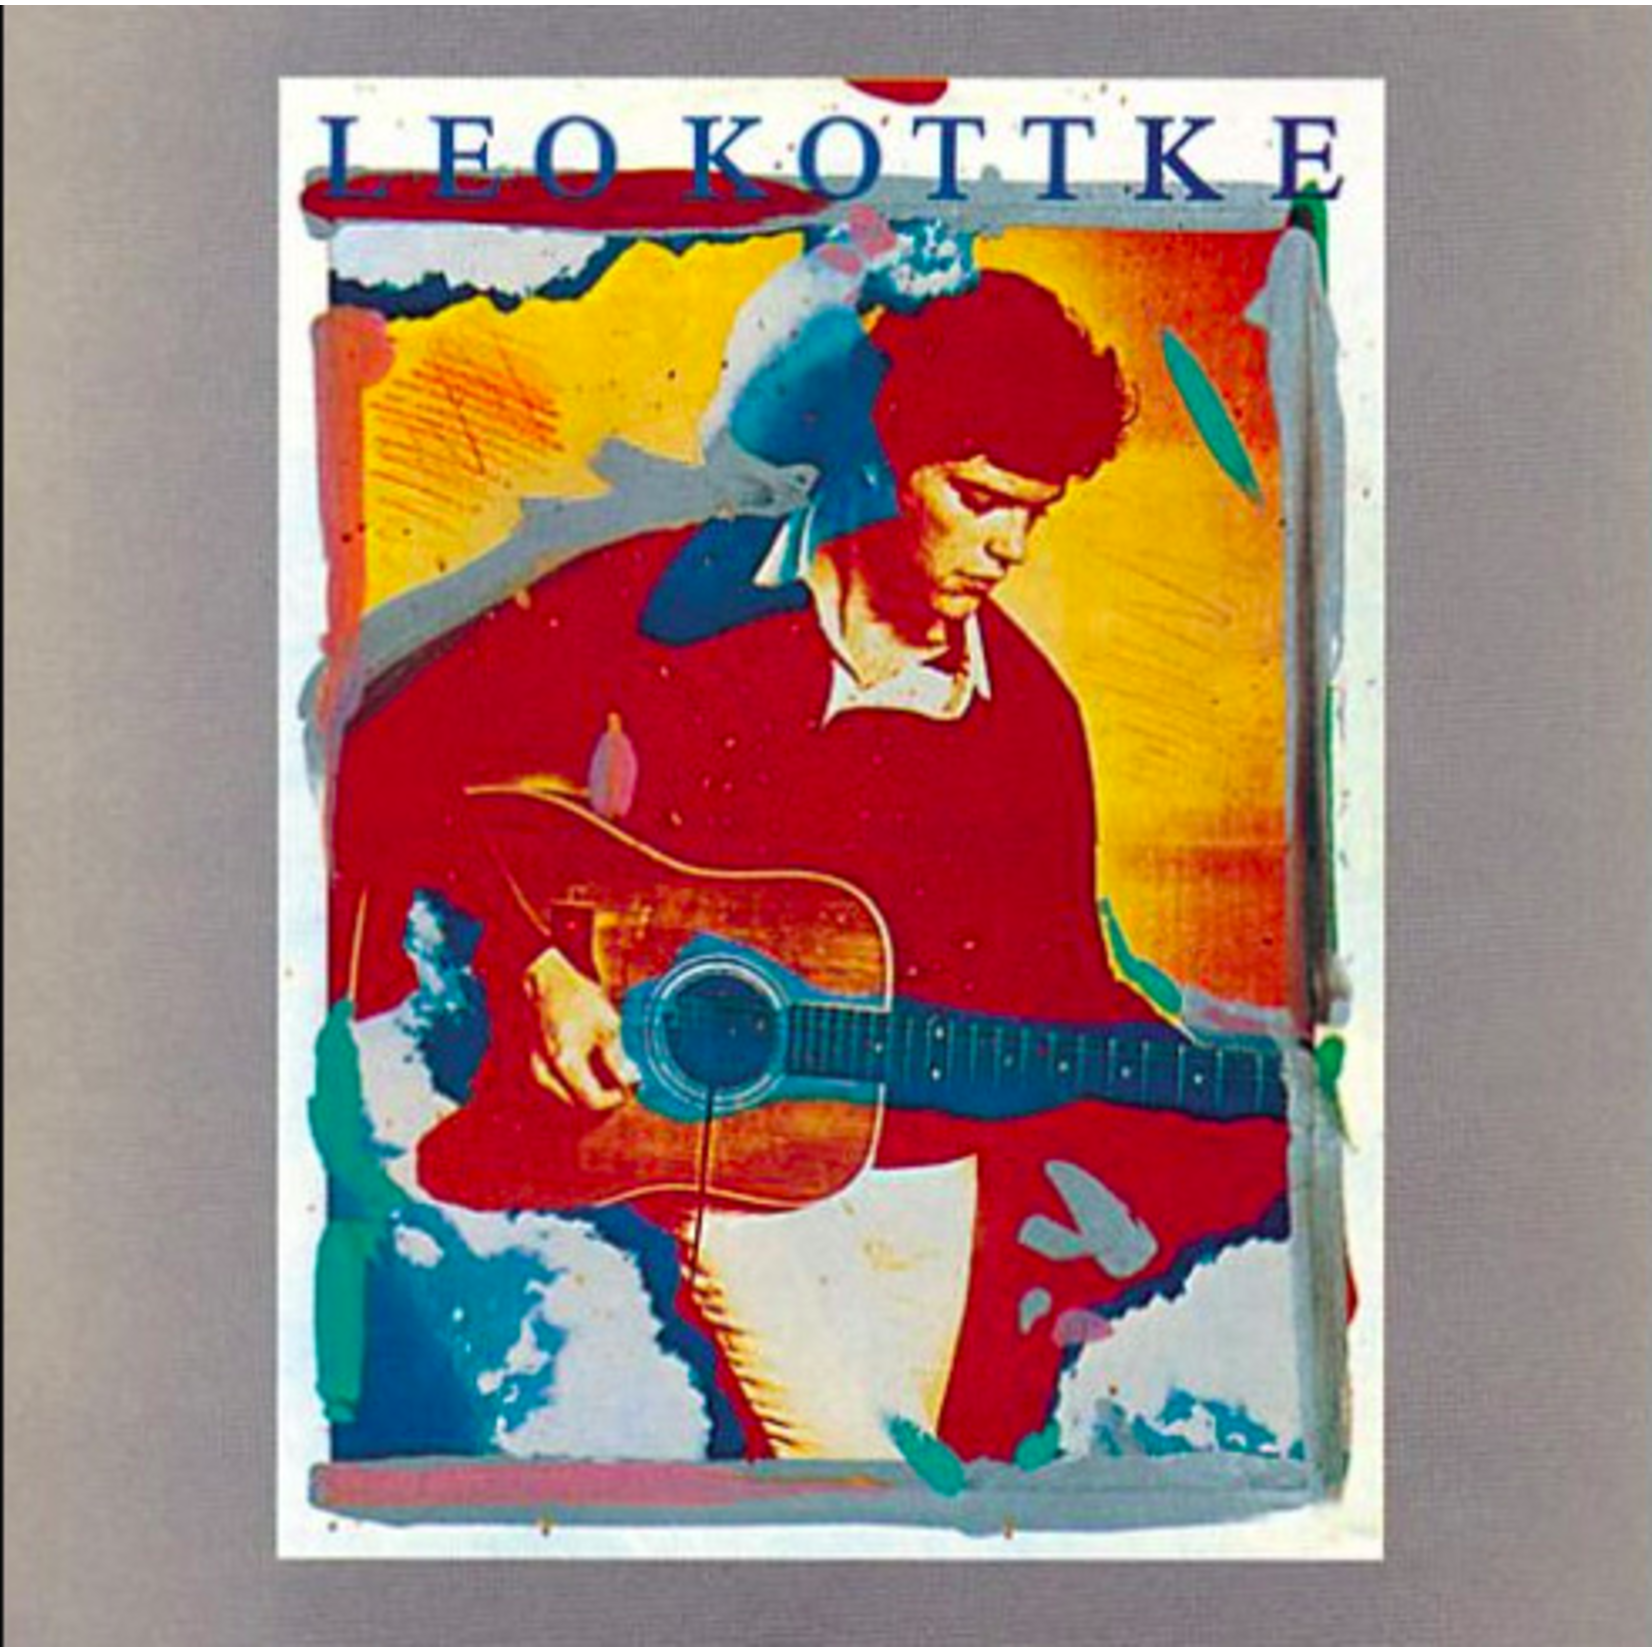 [Vintage] Leo Kottke - self-titled